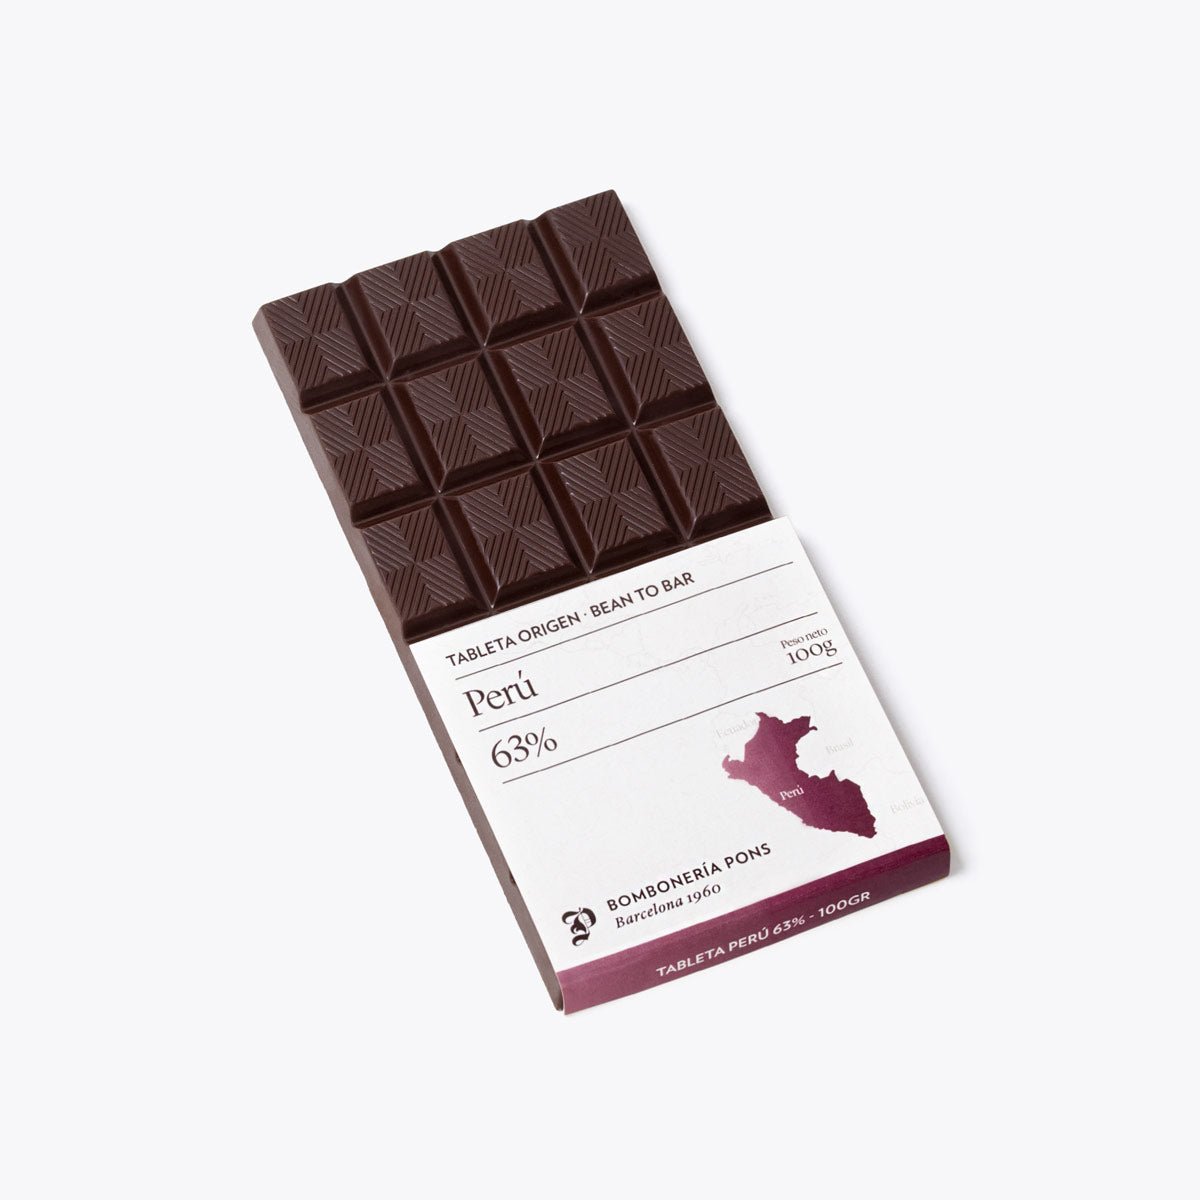 Perú - Tableta de chocolate negro 63% - 100g - Bombonería Pons -